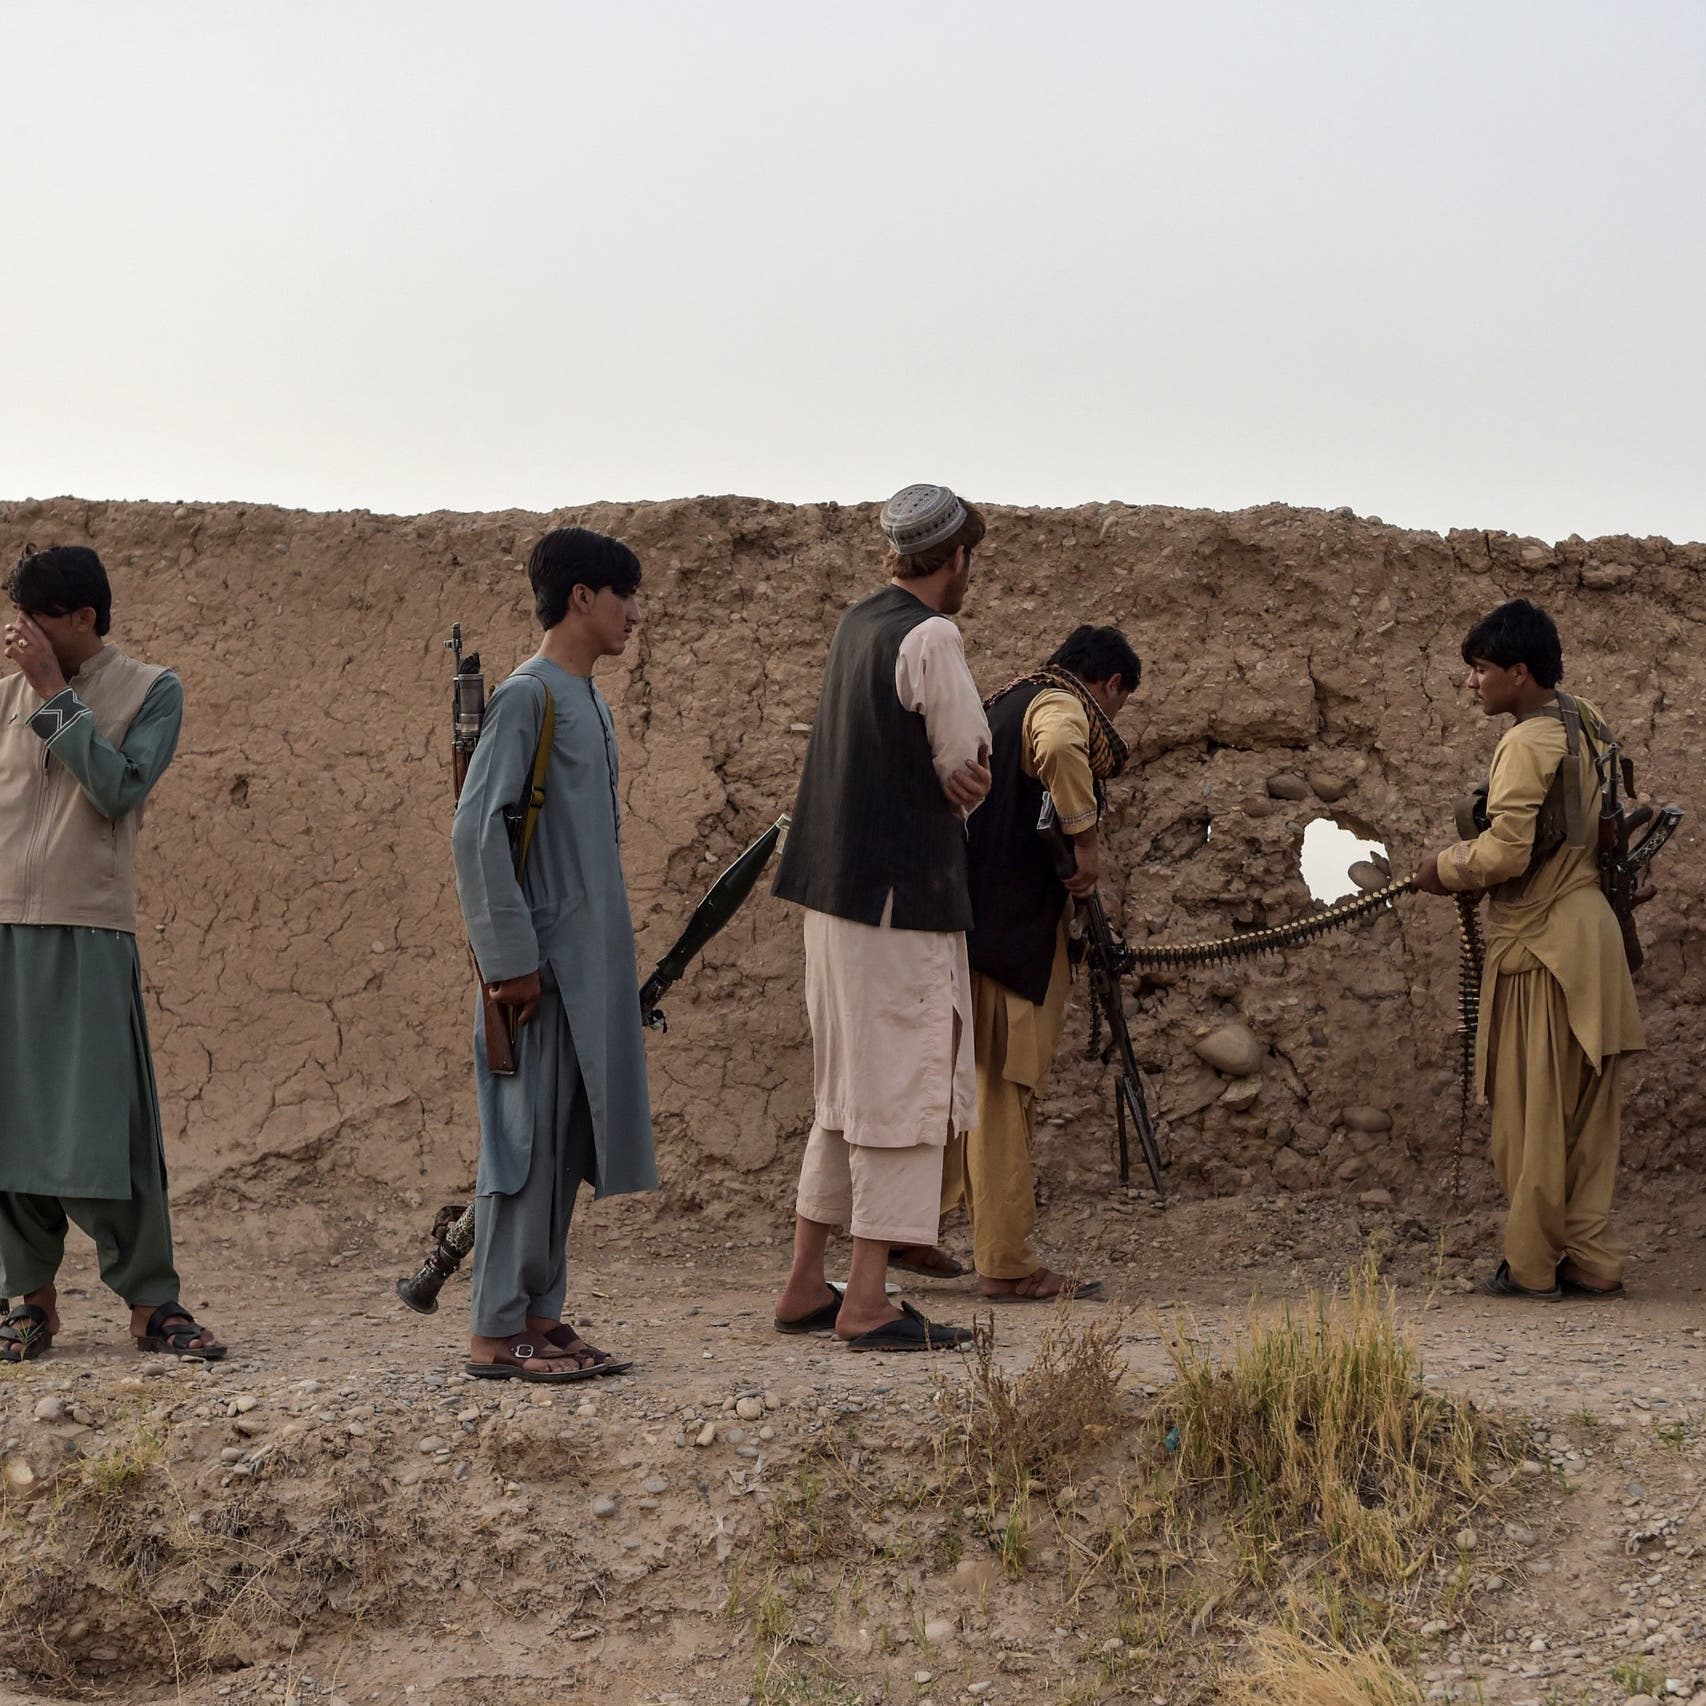 طالبان: سنقدم خطة سلام مكتوبة للحكومة الأفغانية